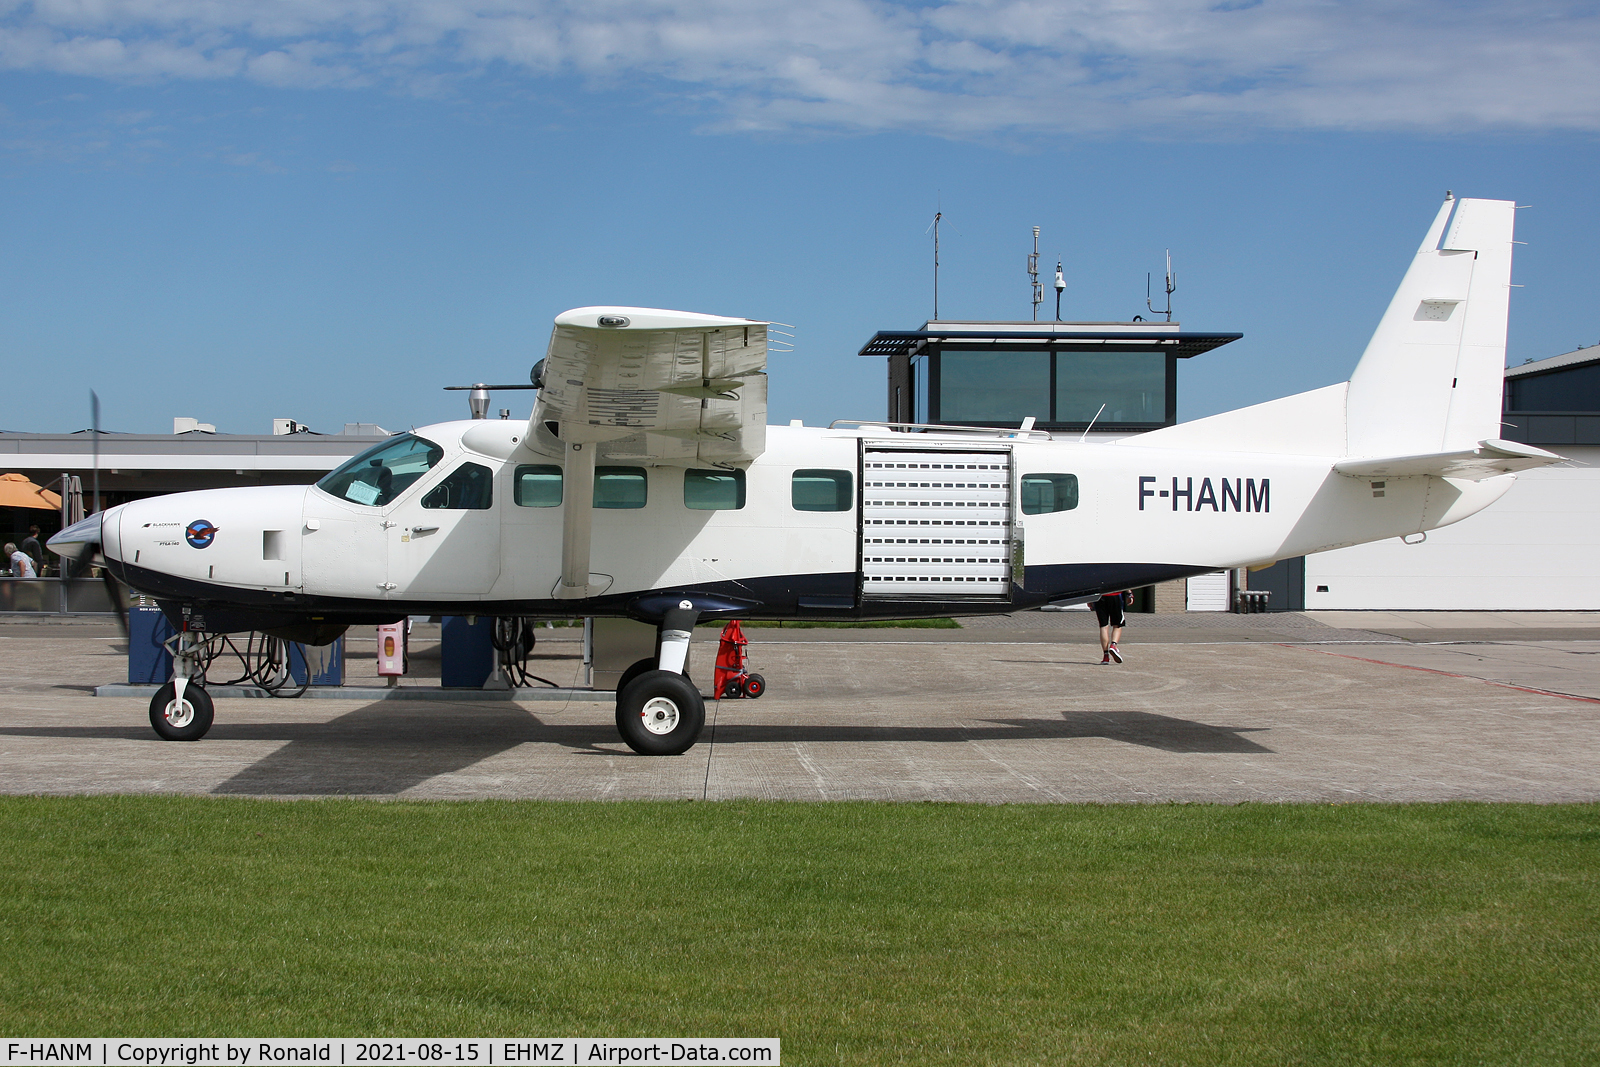 F-HANM, 1997 Cessna 208B Grand Caravan C/N 208B0640, at ehmz